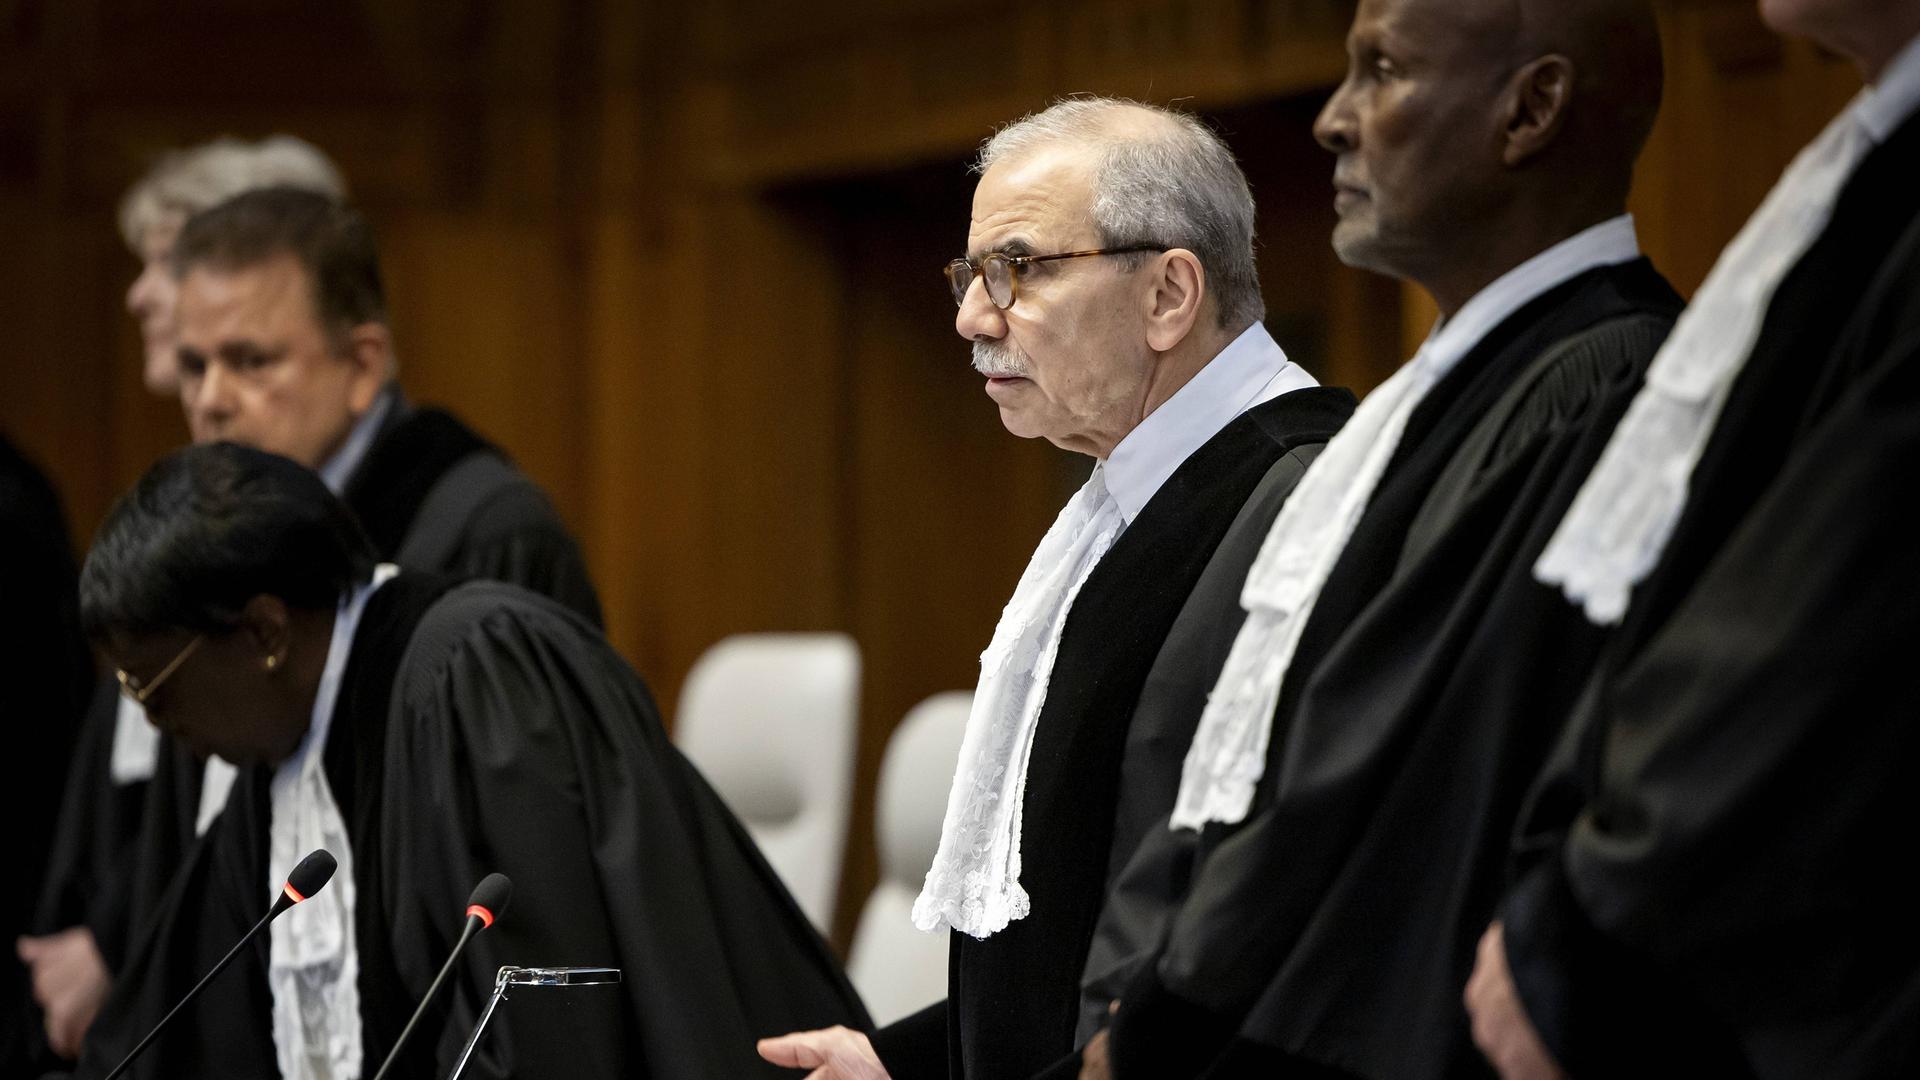 Zu sehen sind mehrere Richter des Internationalen Gerichtshofs in Den Haag während einer Urteilsverkündung.